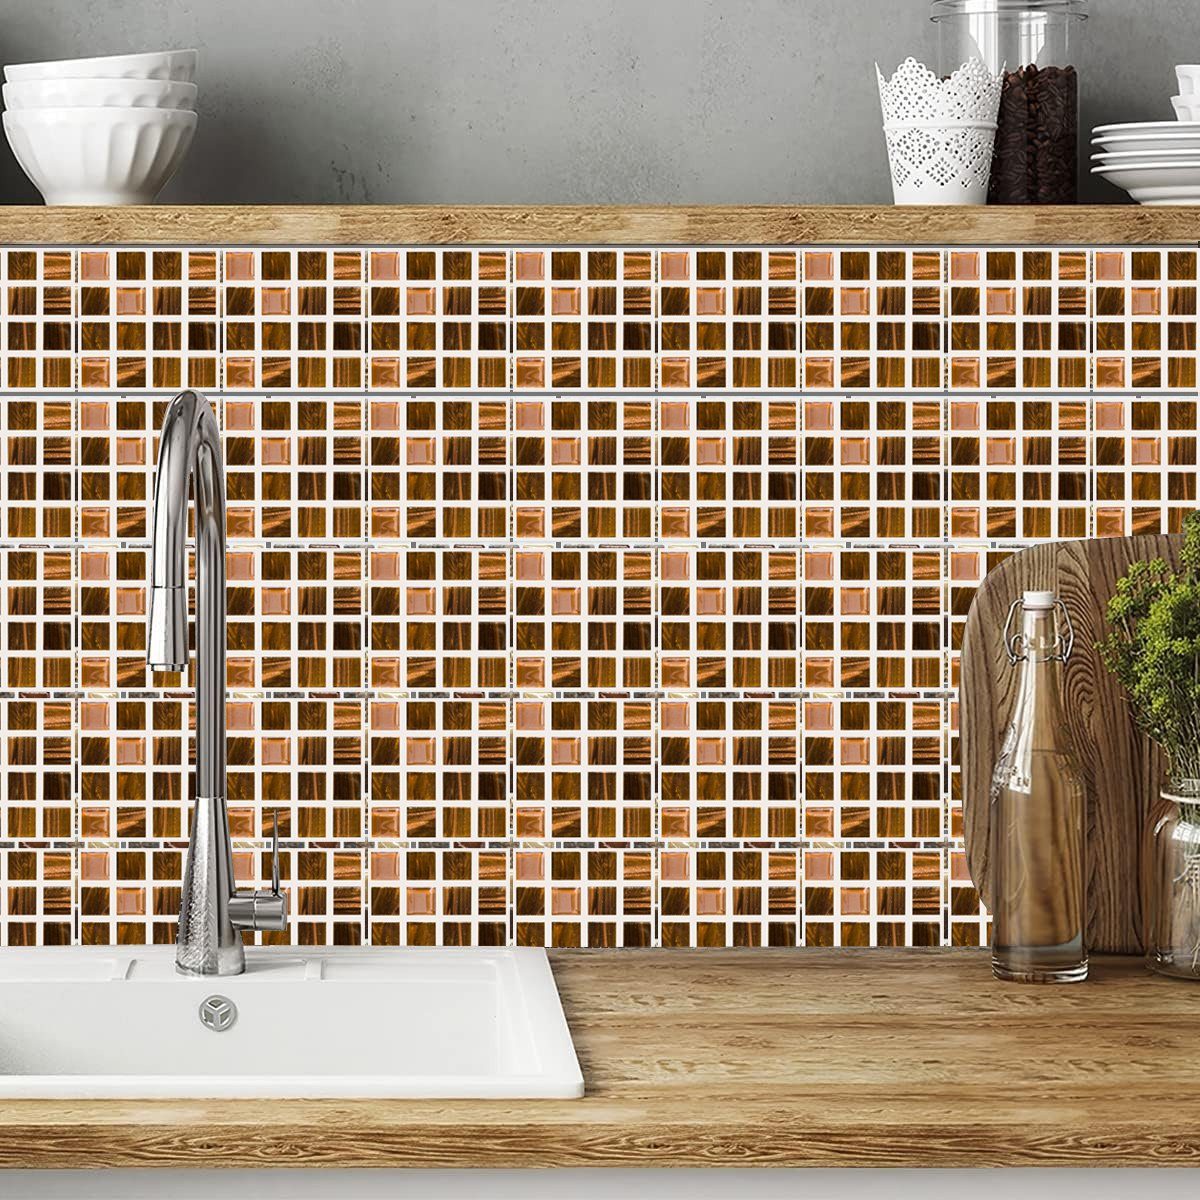 Jormftte Wandtattoo Mosaik-Wandfliesen Aufkleber,Selbstklebende,Für Küche Badezimmer 4 Mehrfarbig